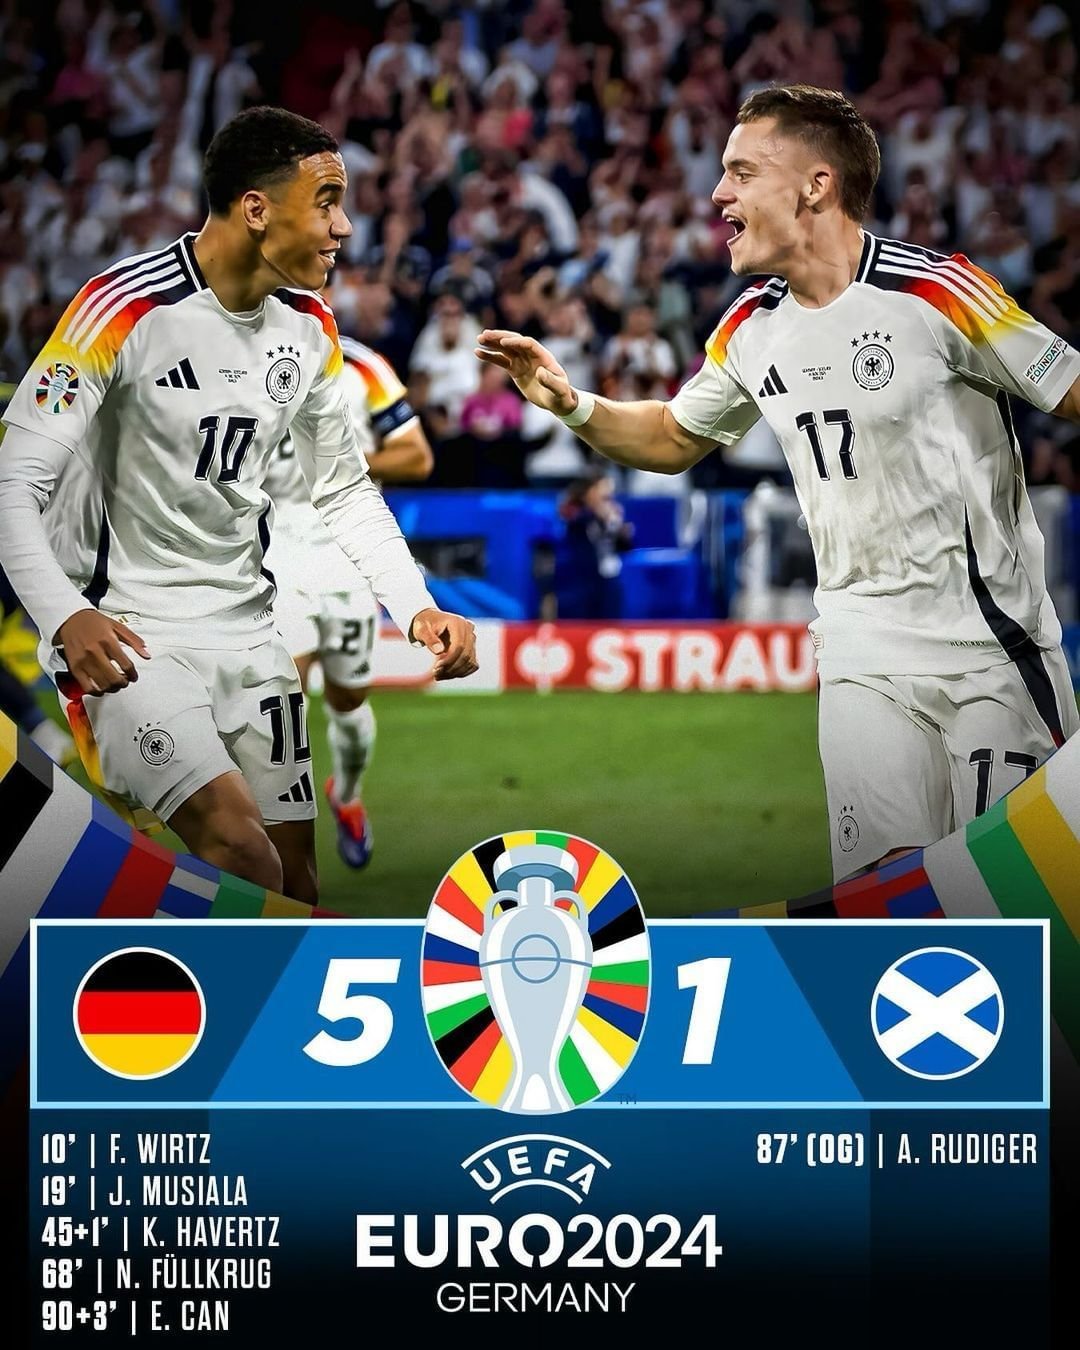 Jerman Berhasil Mengalahkan Di laga Pertama Euro 2024 dengan Skor Telak 5-1